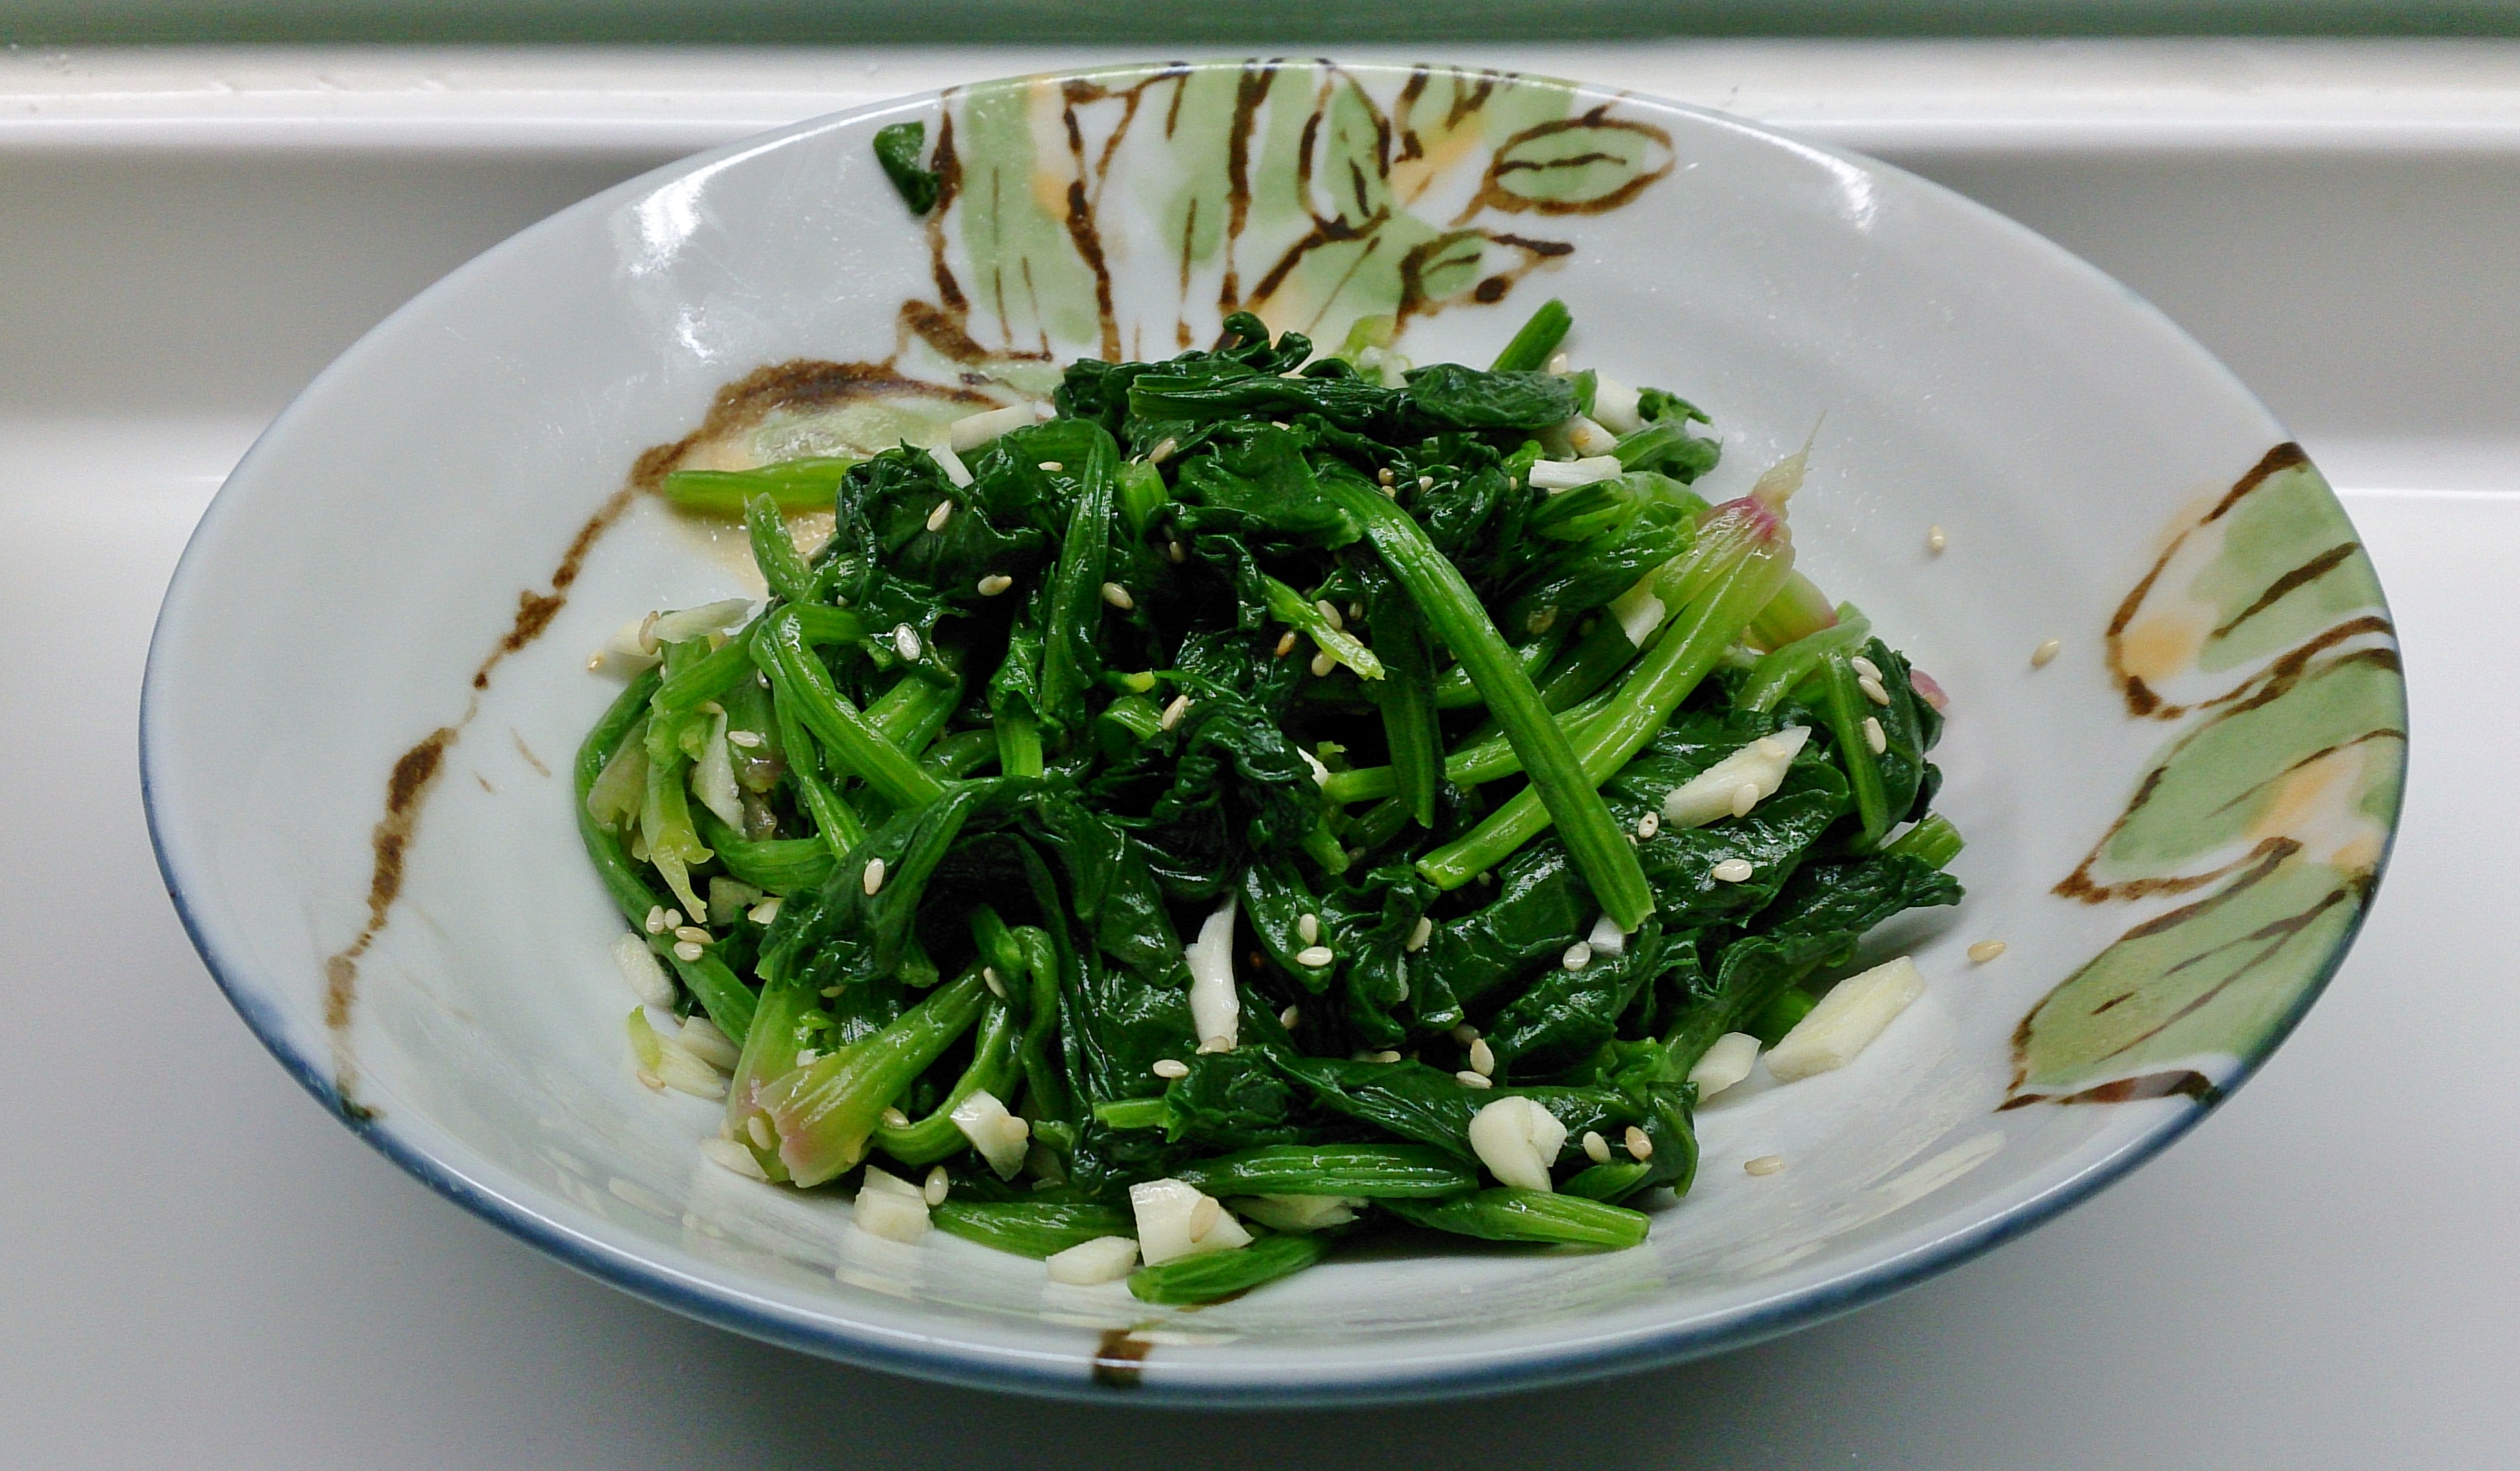 【影片】日式簡易前菜 - 涼拌芝麻菠菜 by 成波之路 - 愛料理